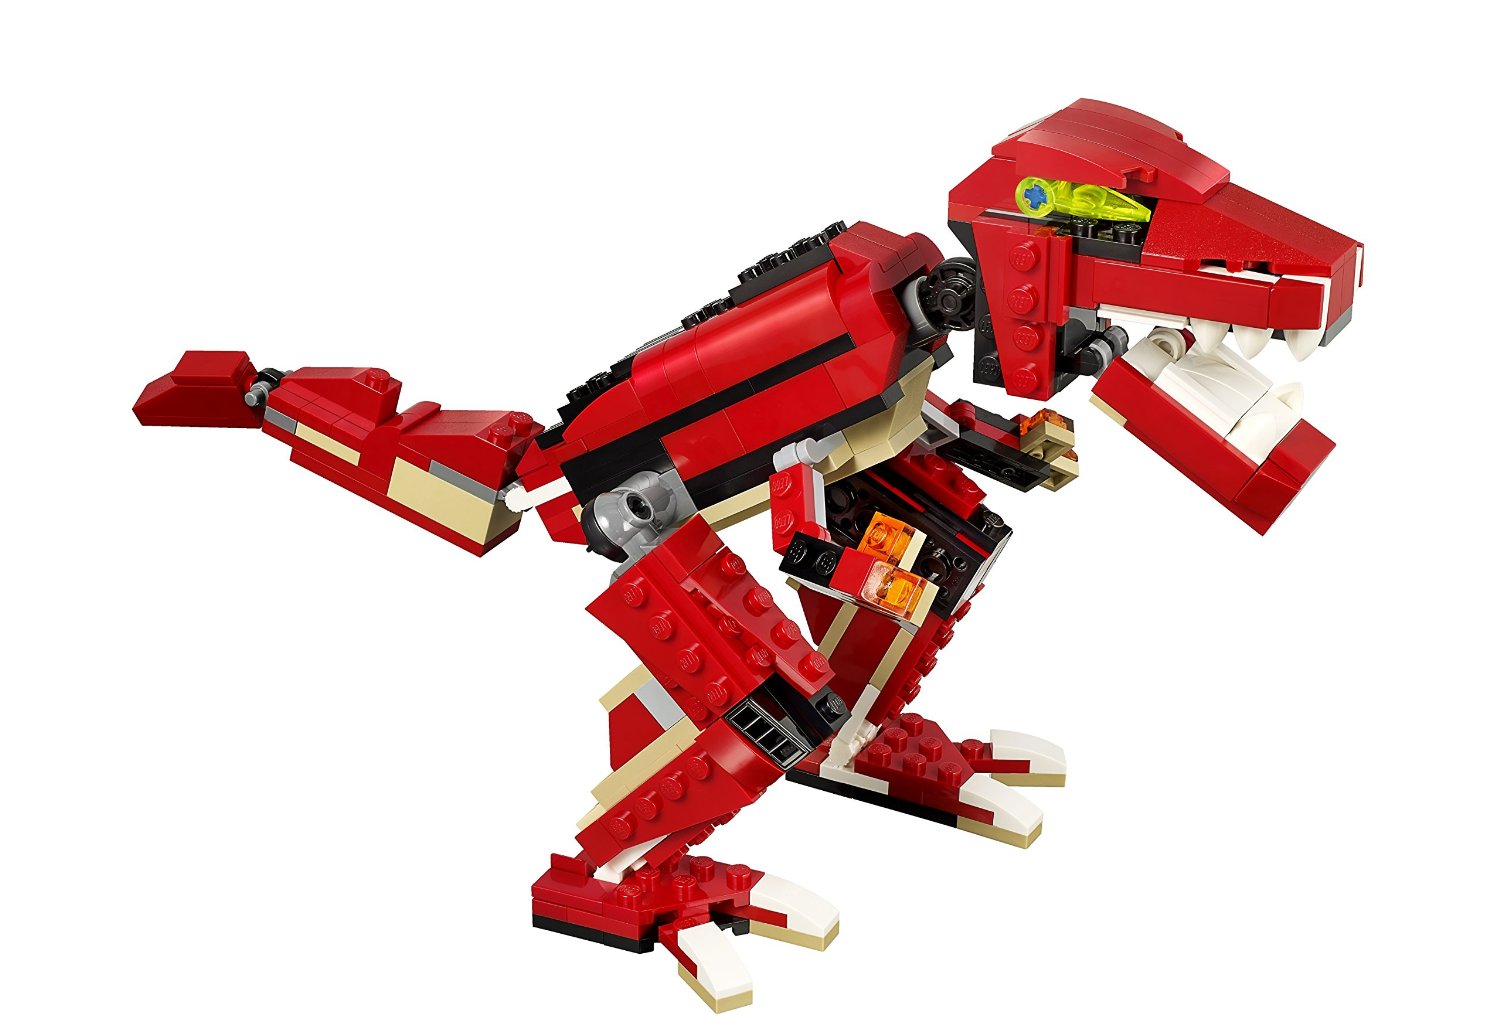 Czerwone Konstrukcje Klocki Lego Creator 31024